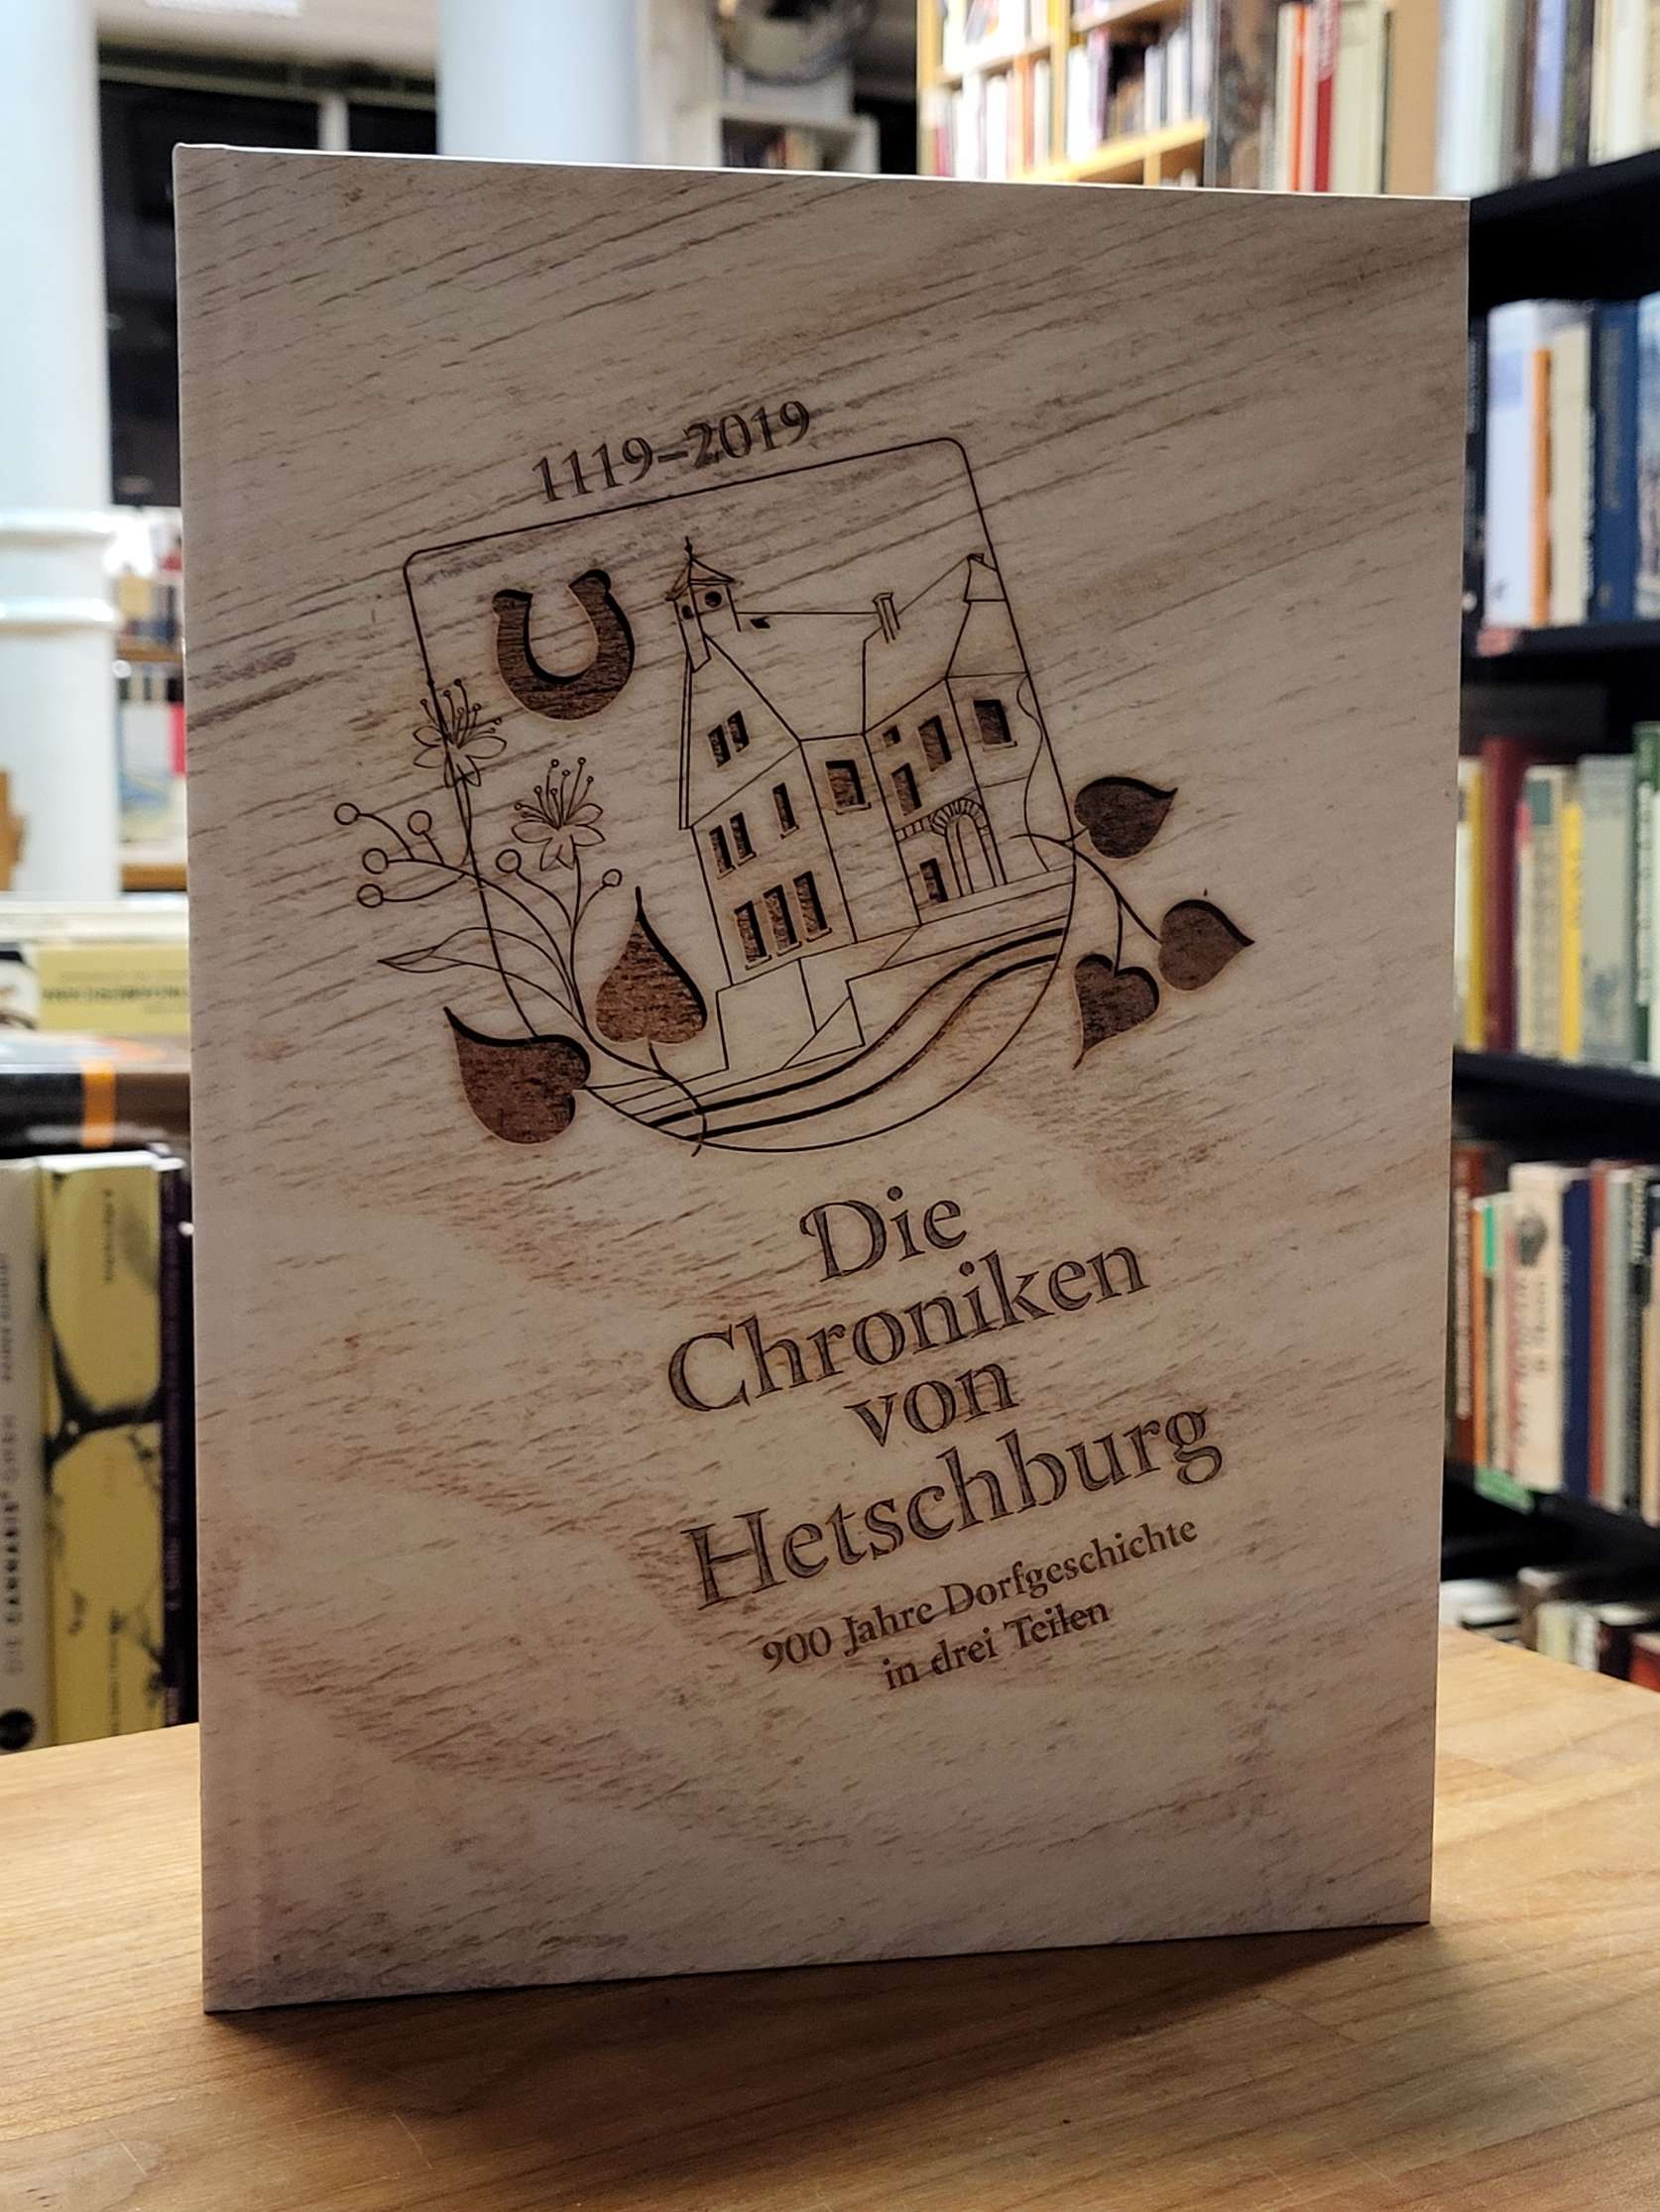 Hetschburg, Die Chroniken von Hetschburg – 1119-2019 – 900 Jahre Dorfgeschichte